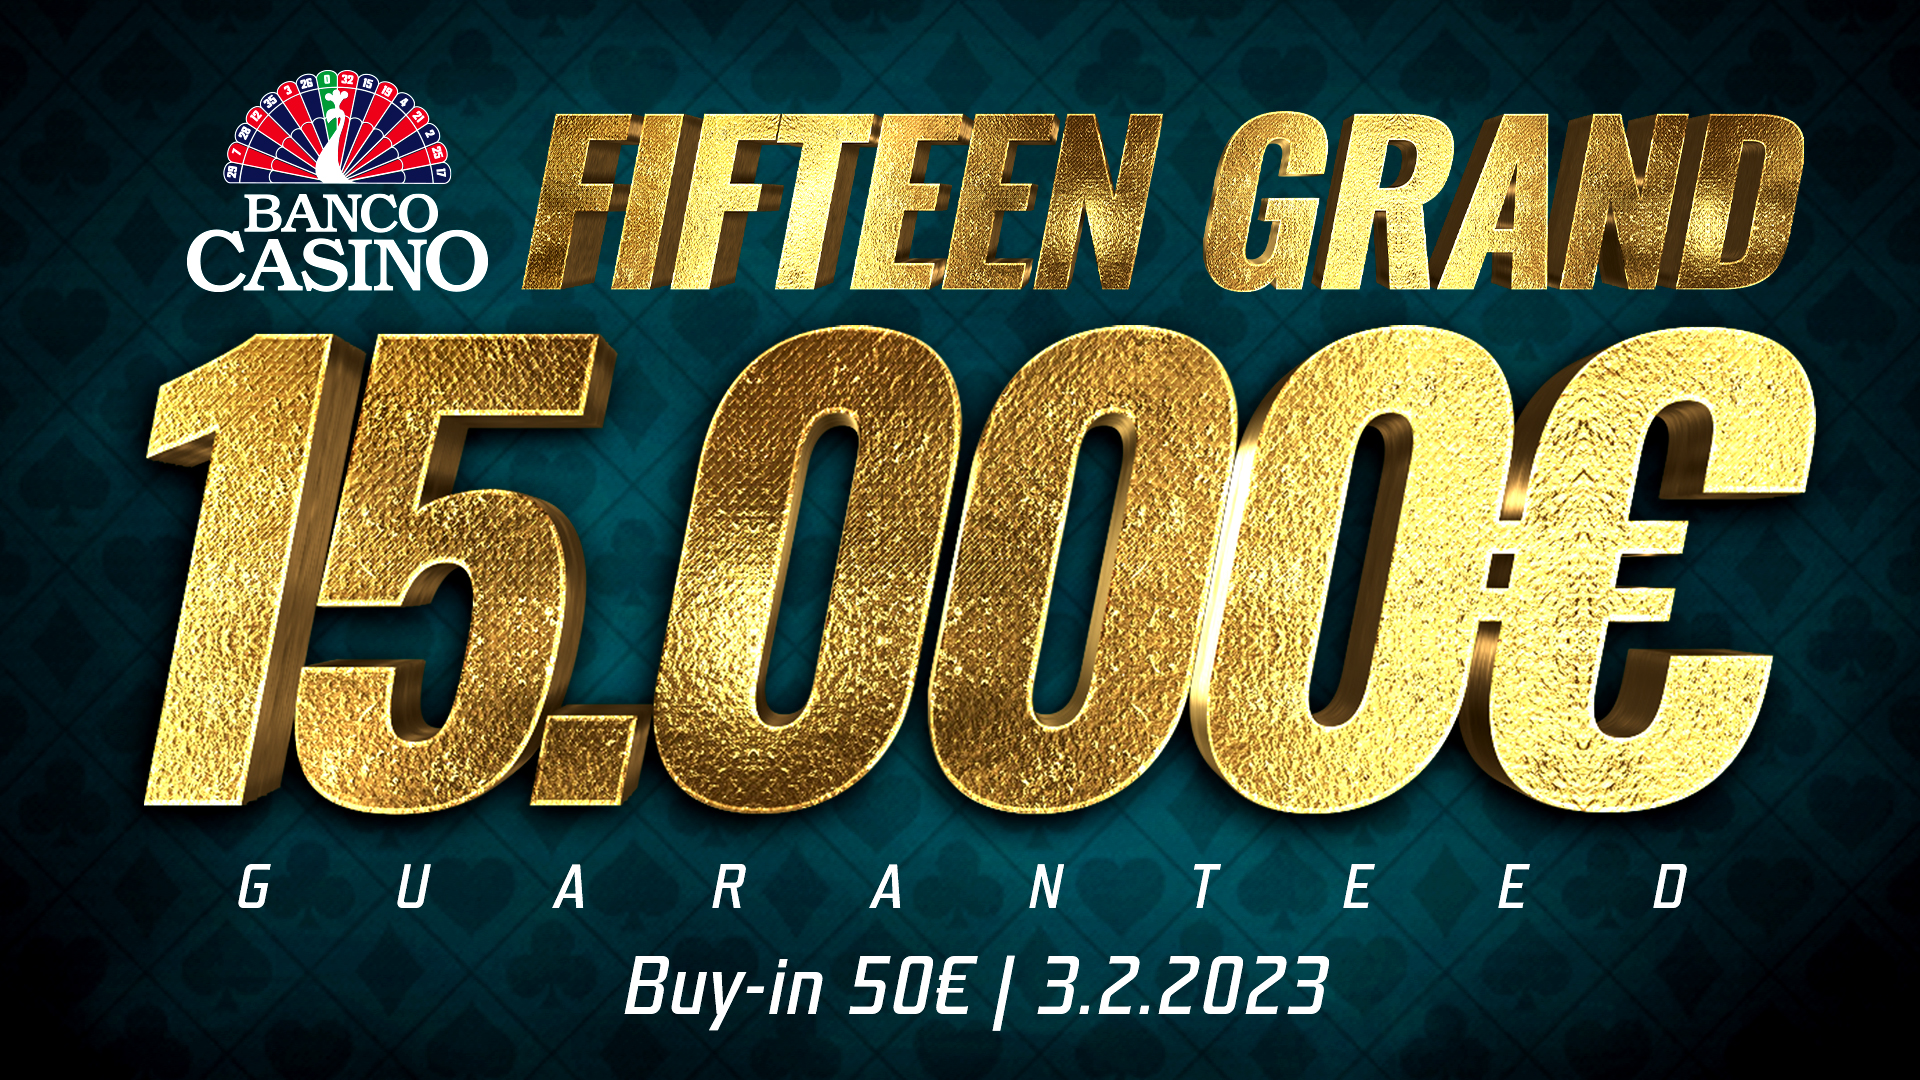 Fifteen Grand 15.000€ GTD (unl. re-entry)